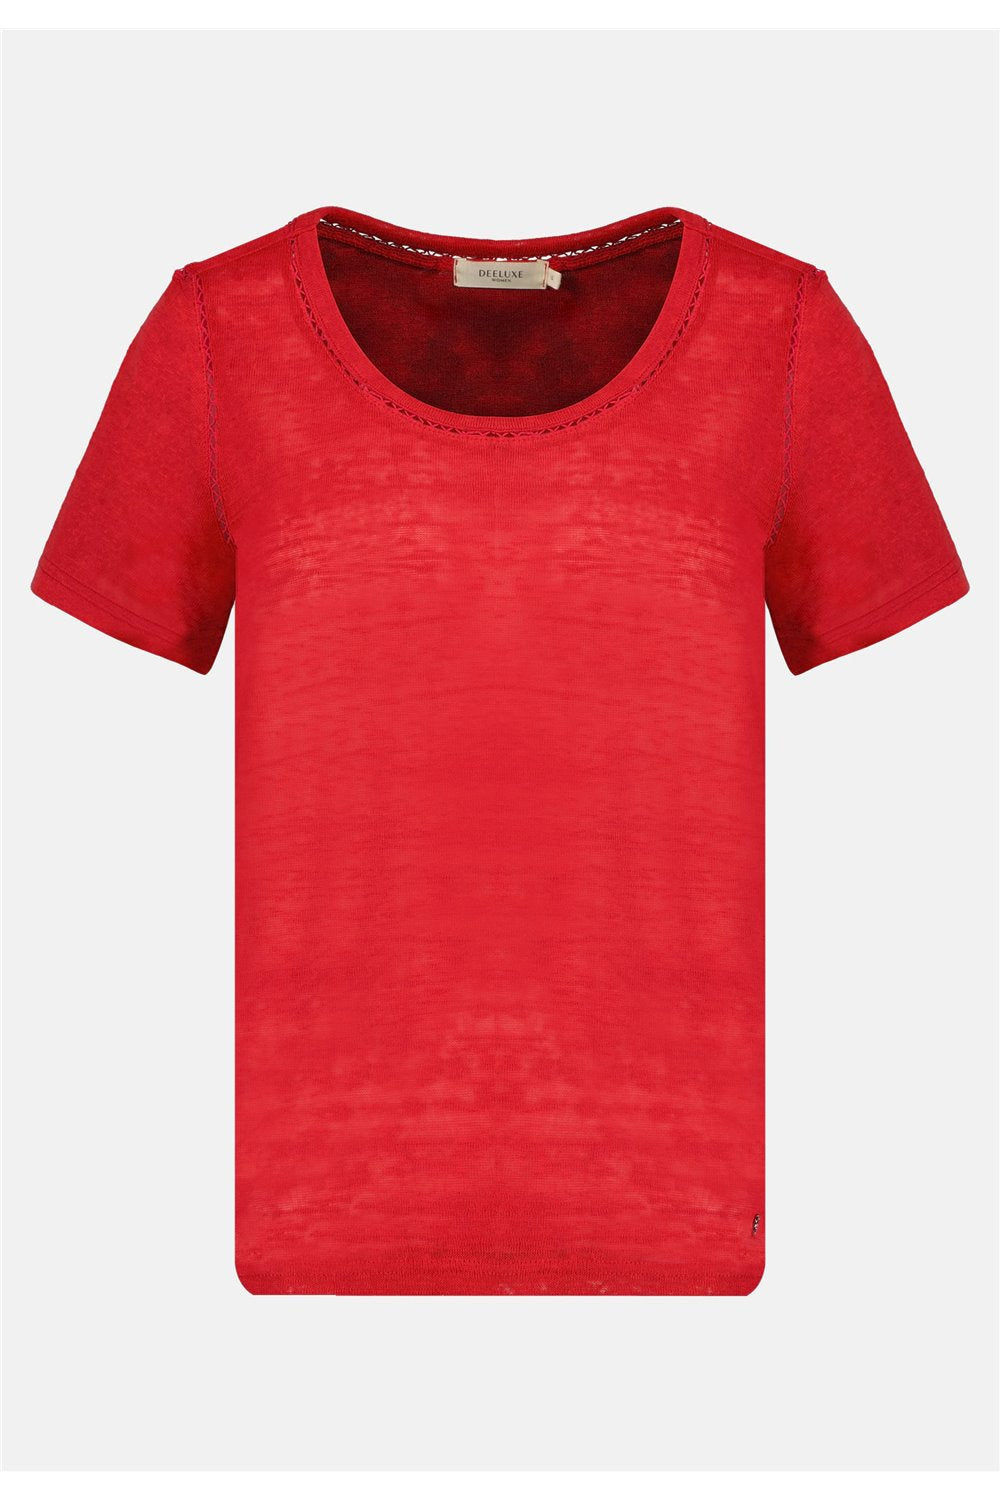 T-shirt rouge façon lin avec détails ajustés Deeluxe, vue de face 